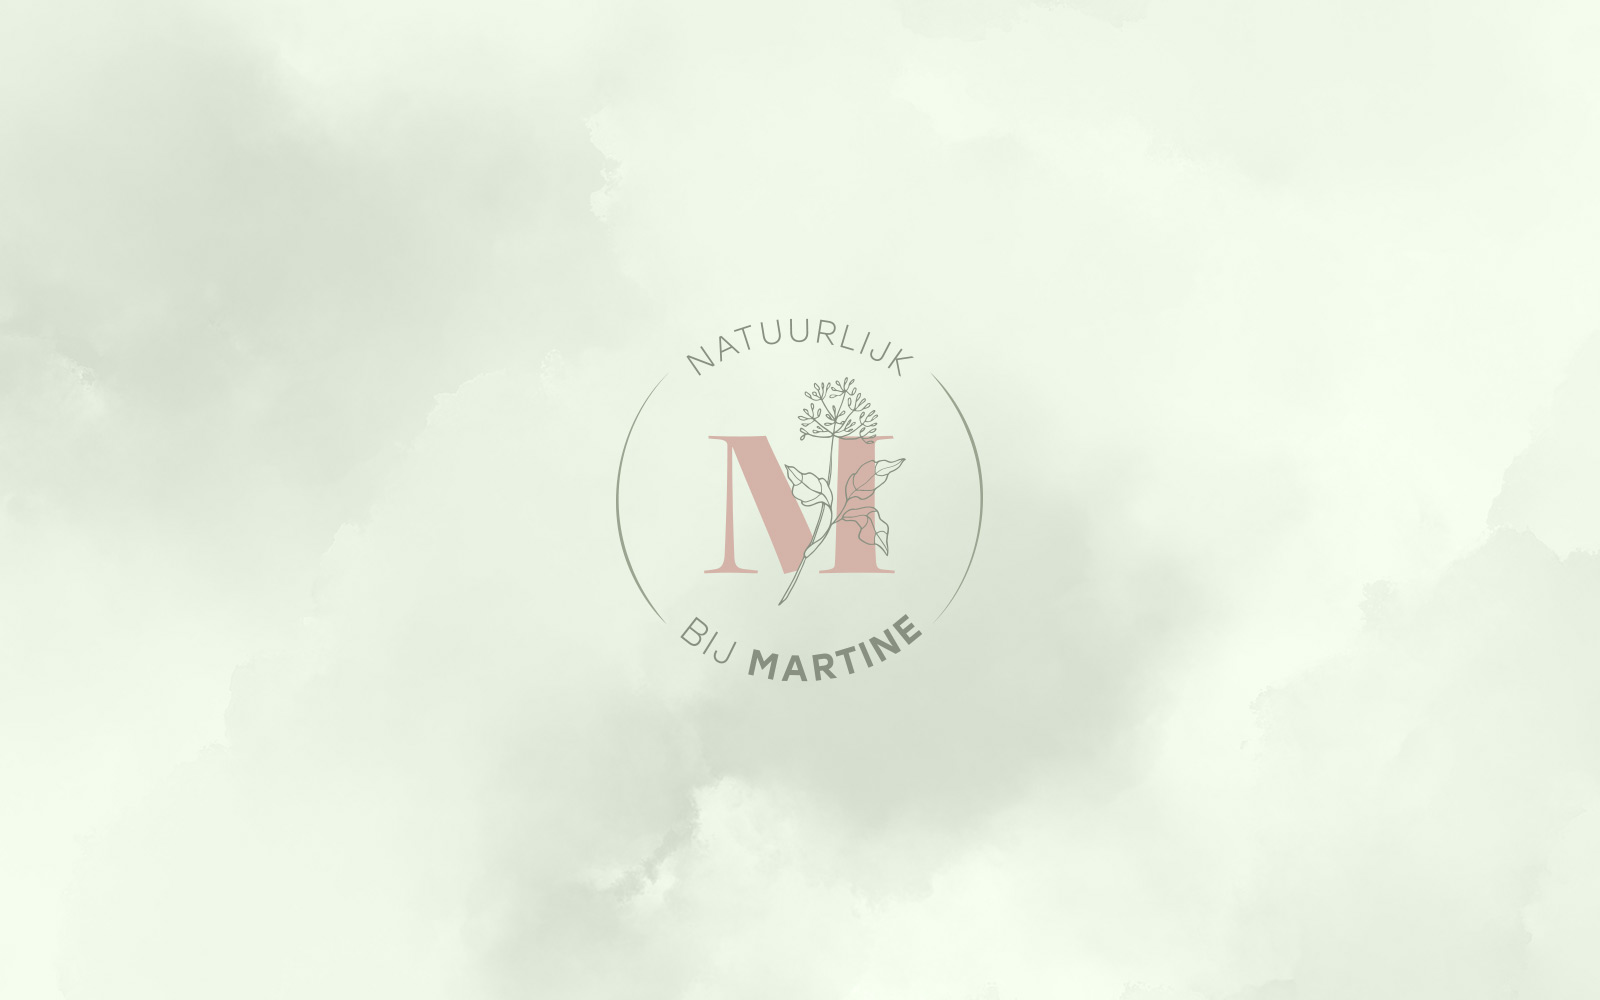 Logo voor Natuurlijk bij Martine | Dualler